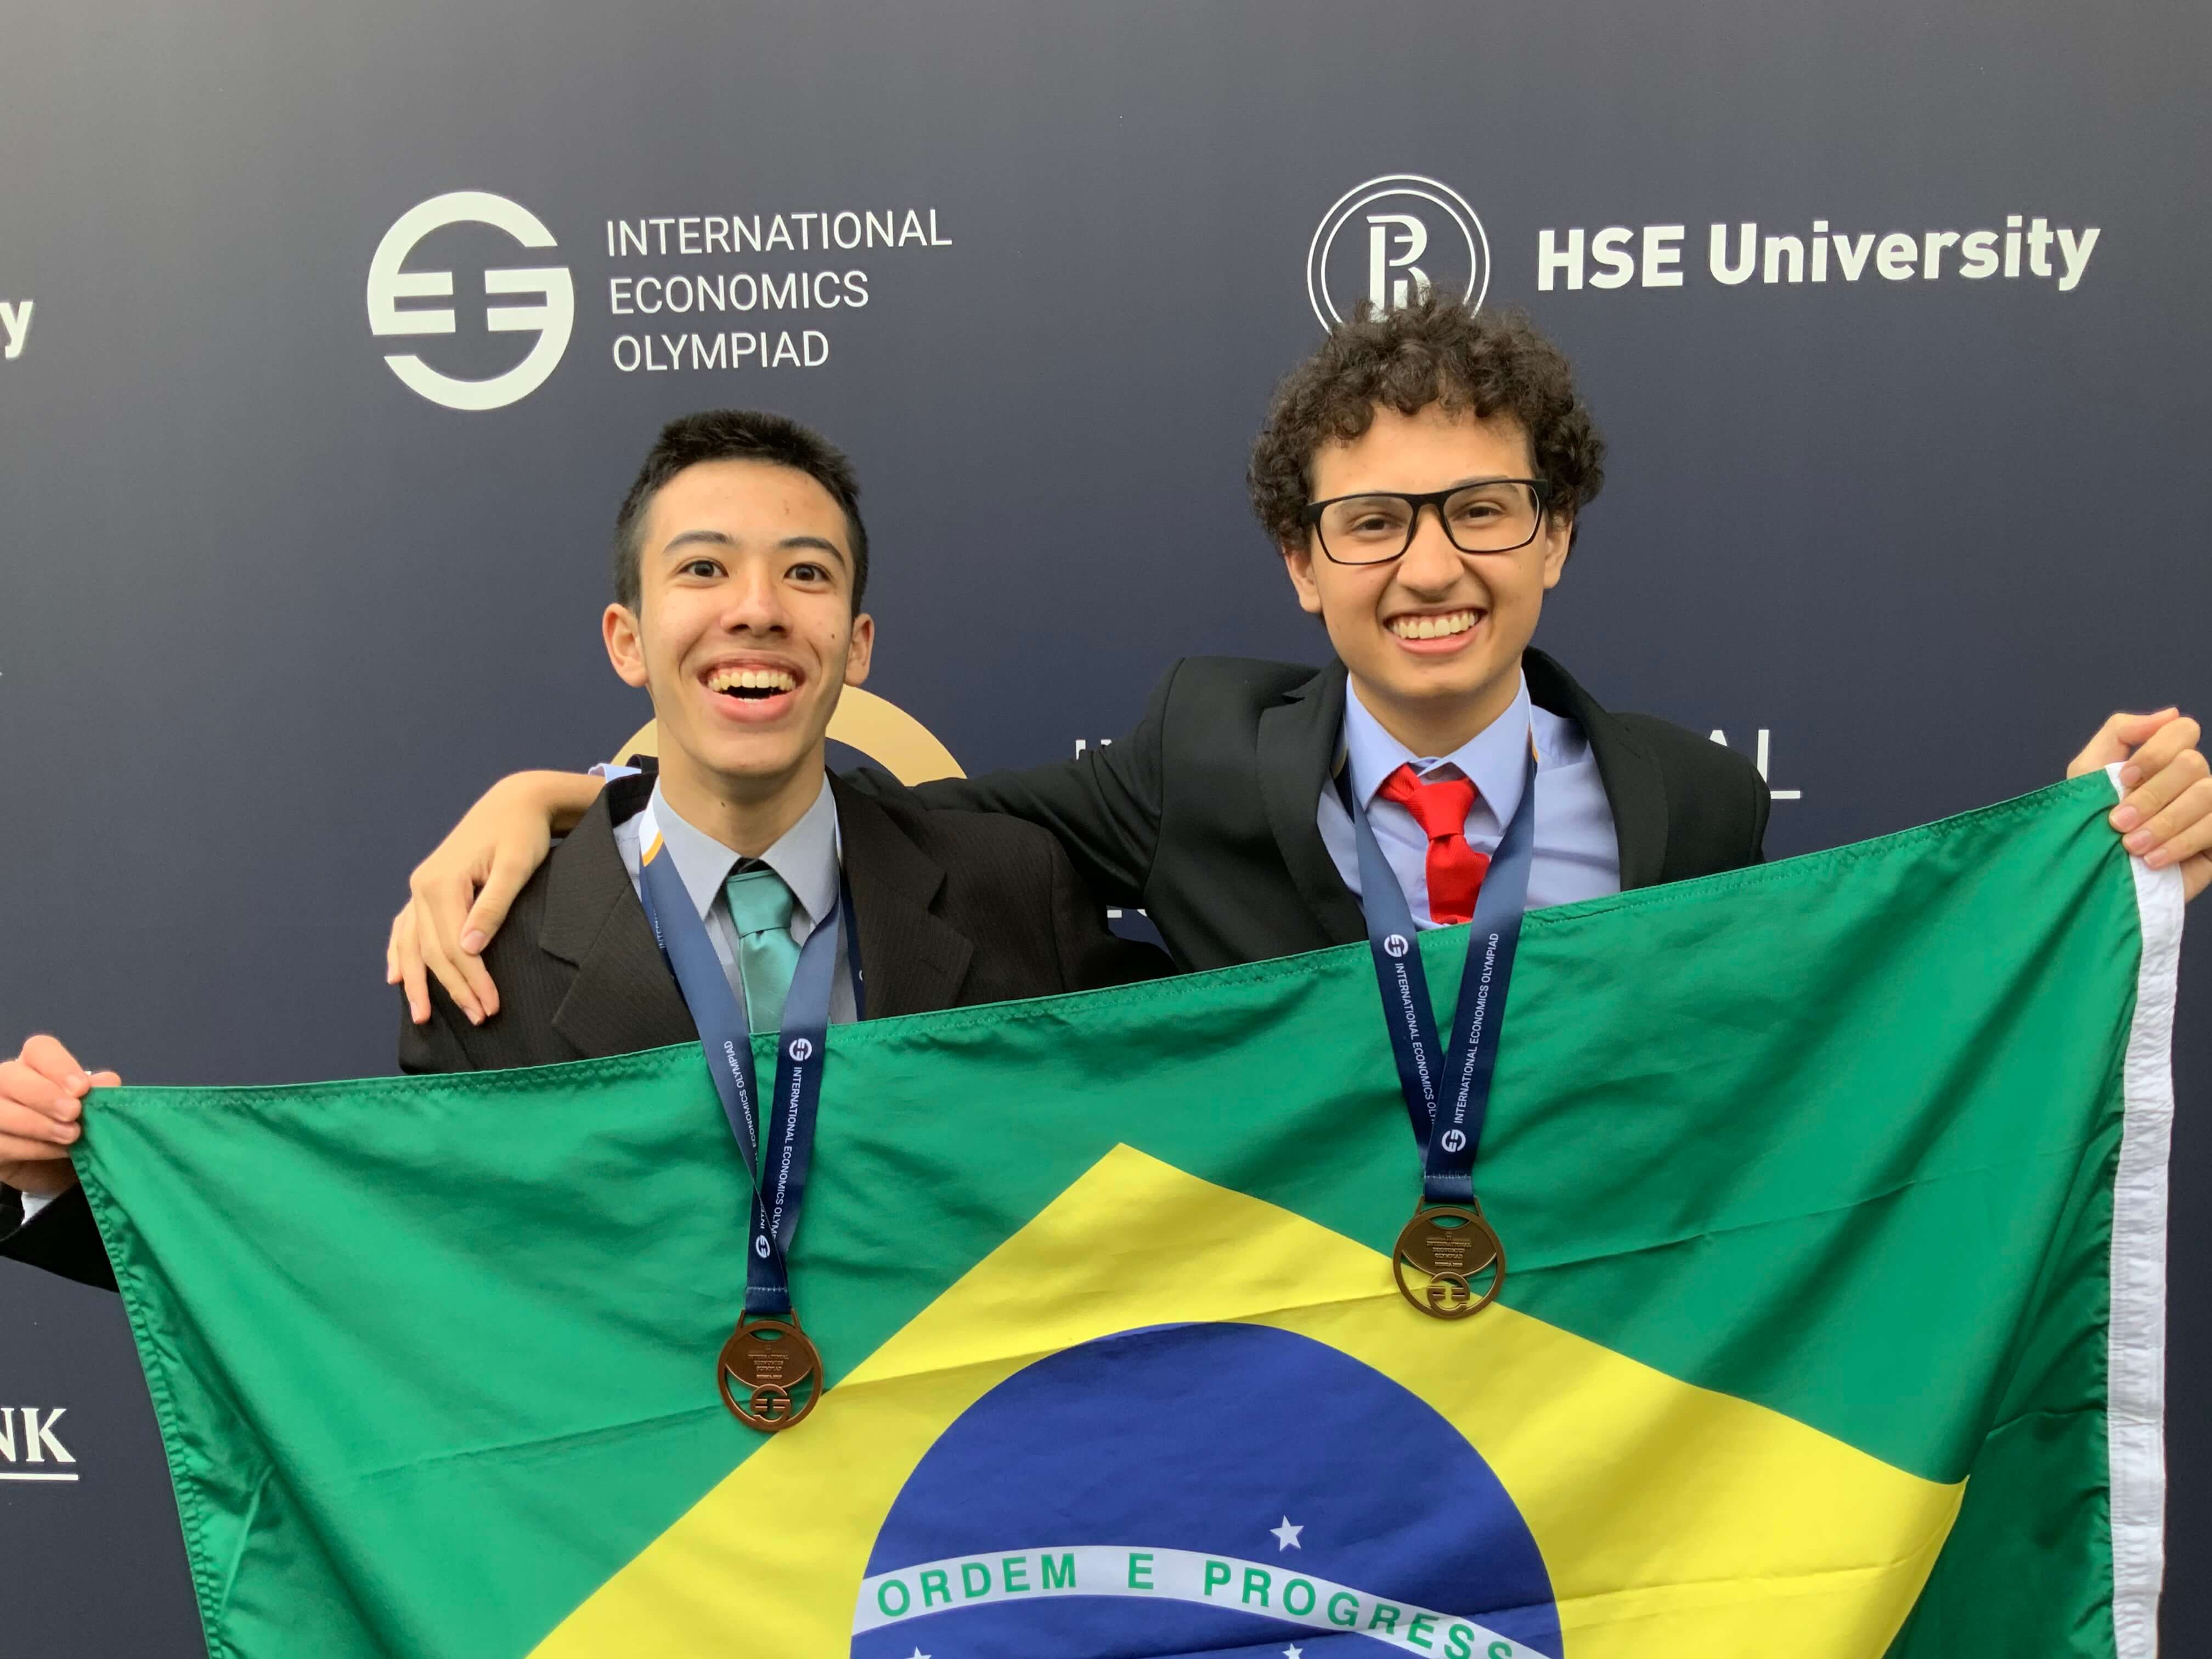 Brasil ganha medalha de ouro na Olímpiada Internacional de Economia 2019